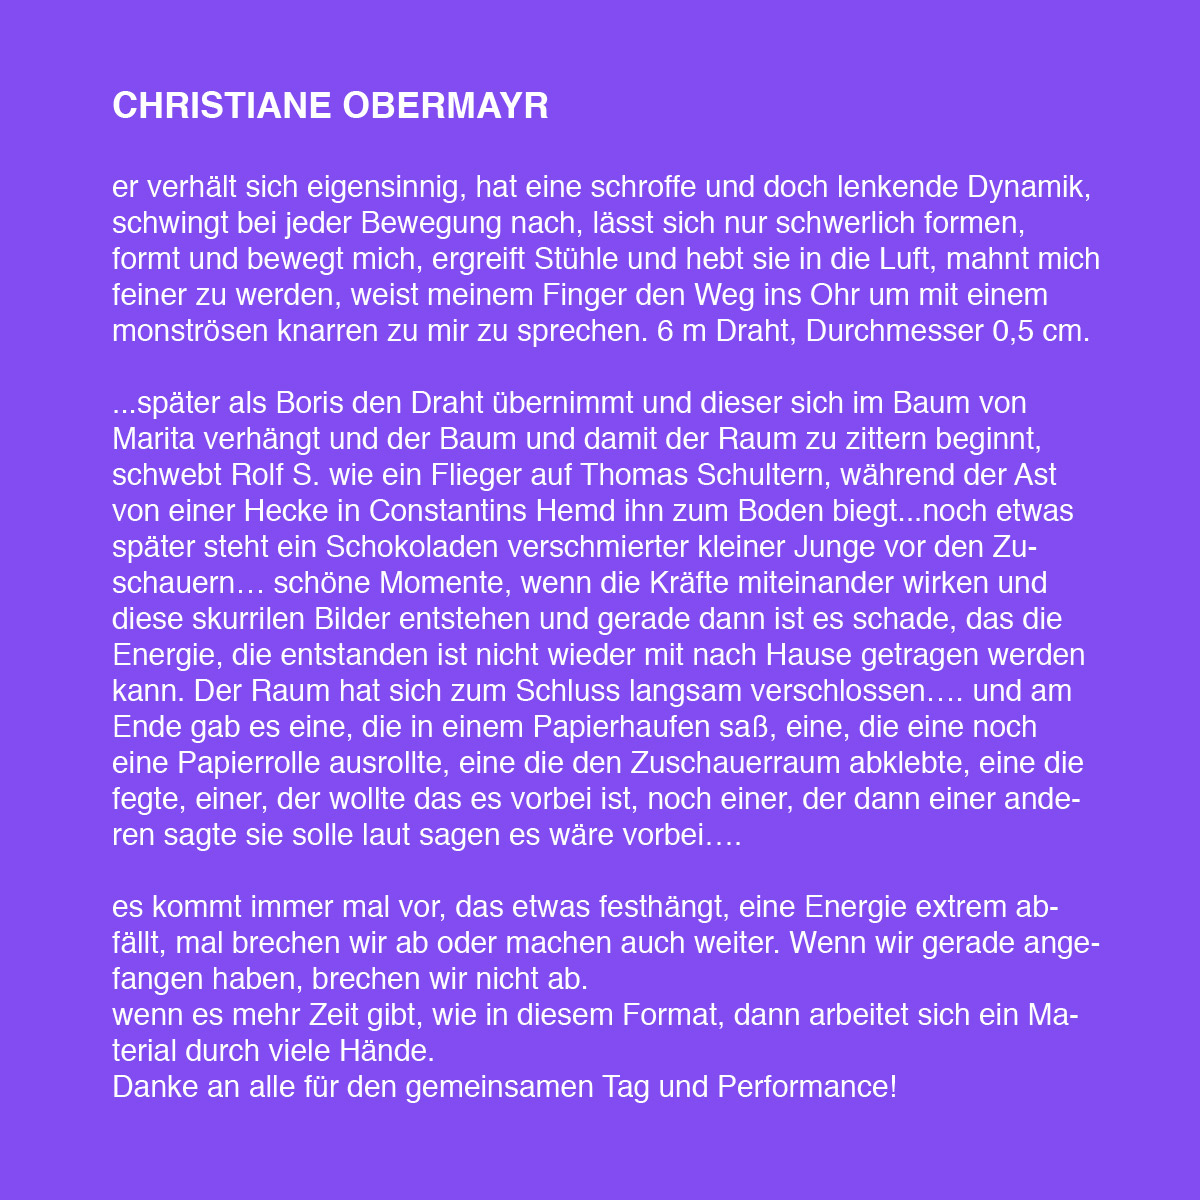 ChristianeObermayr